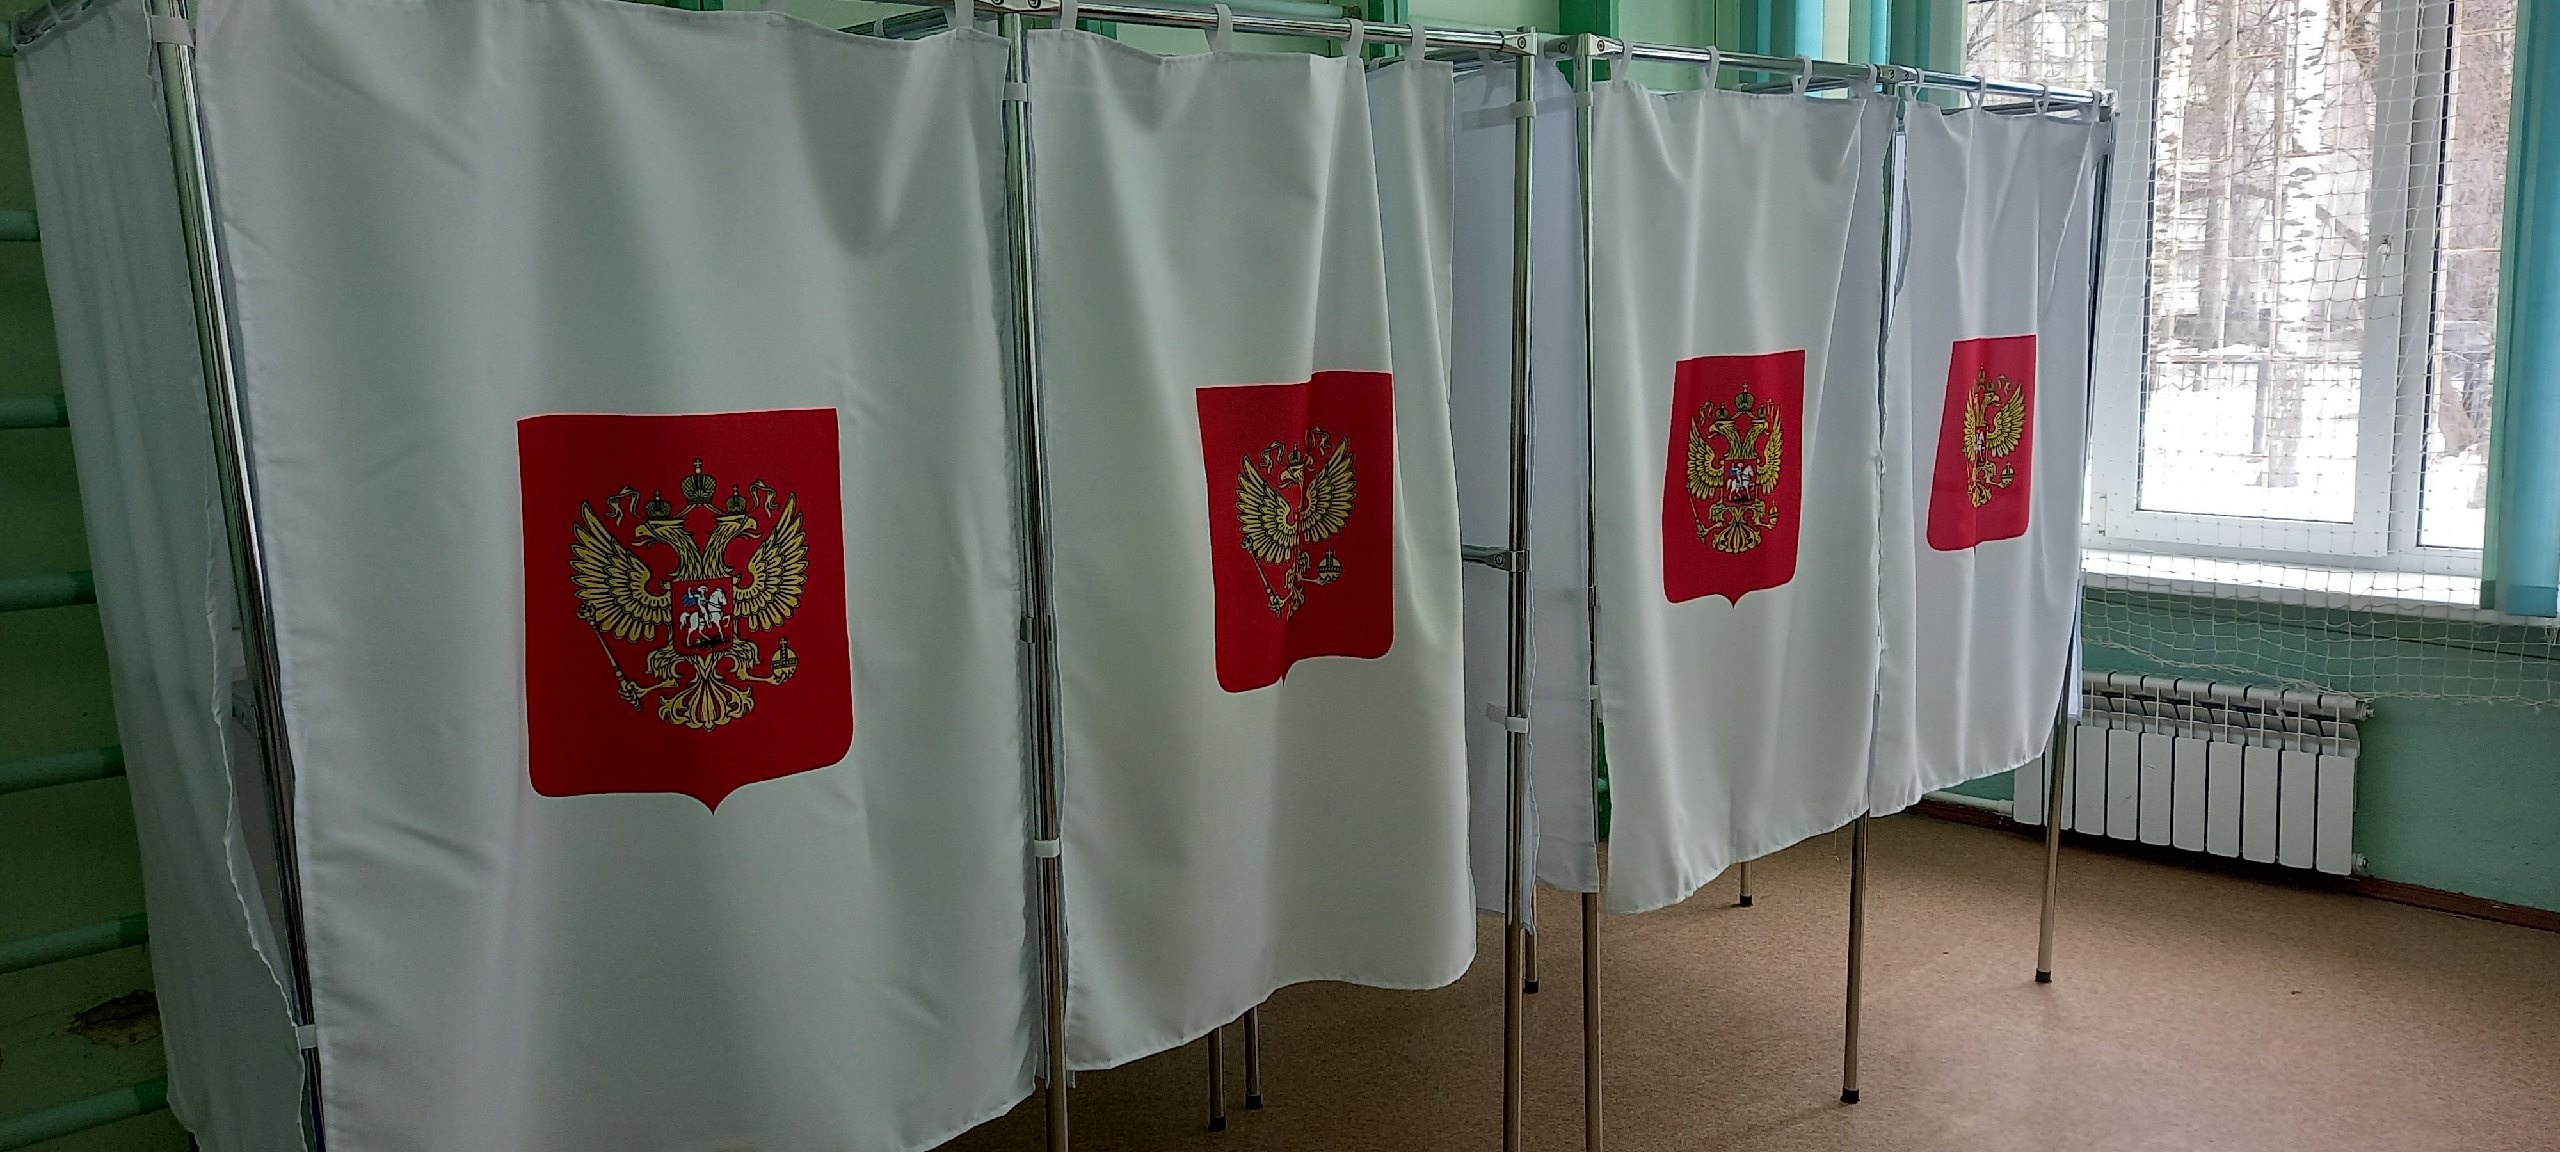 В Тверской области проголосовали 56% избирателей